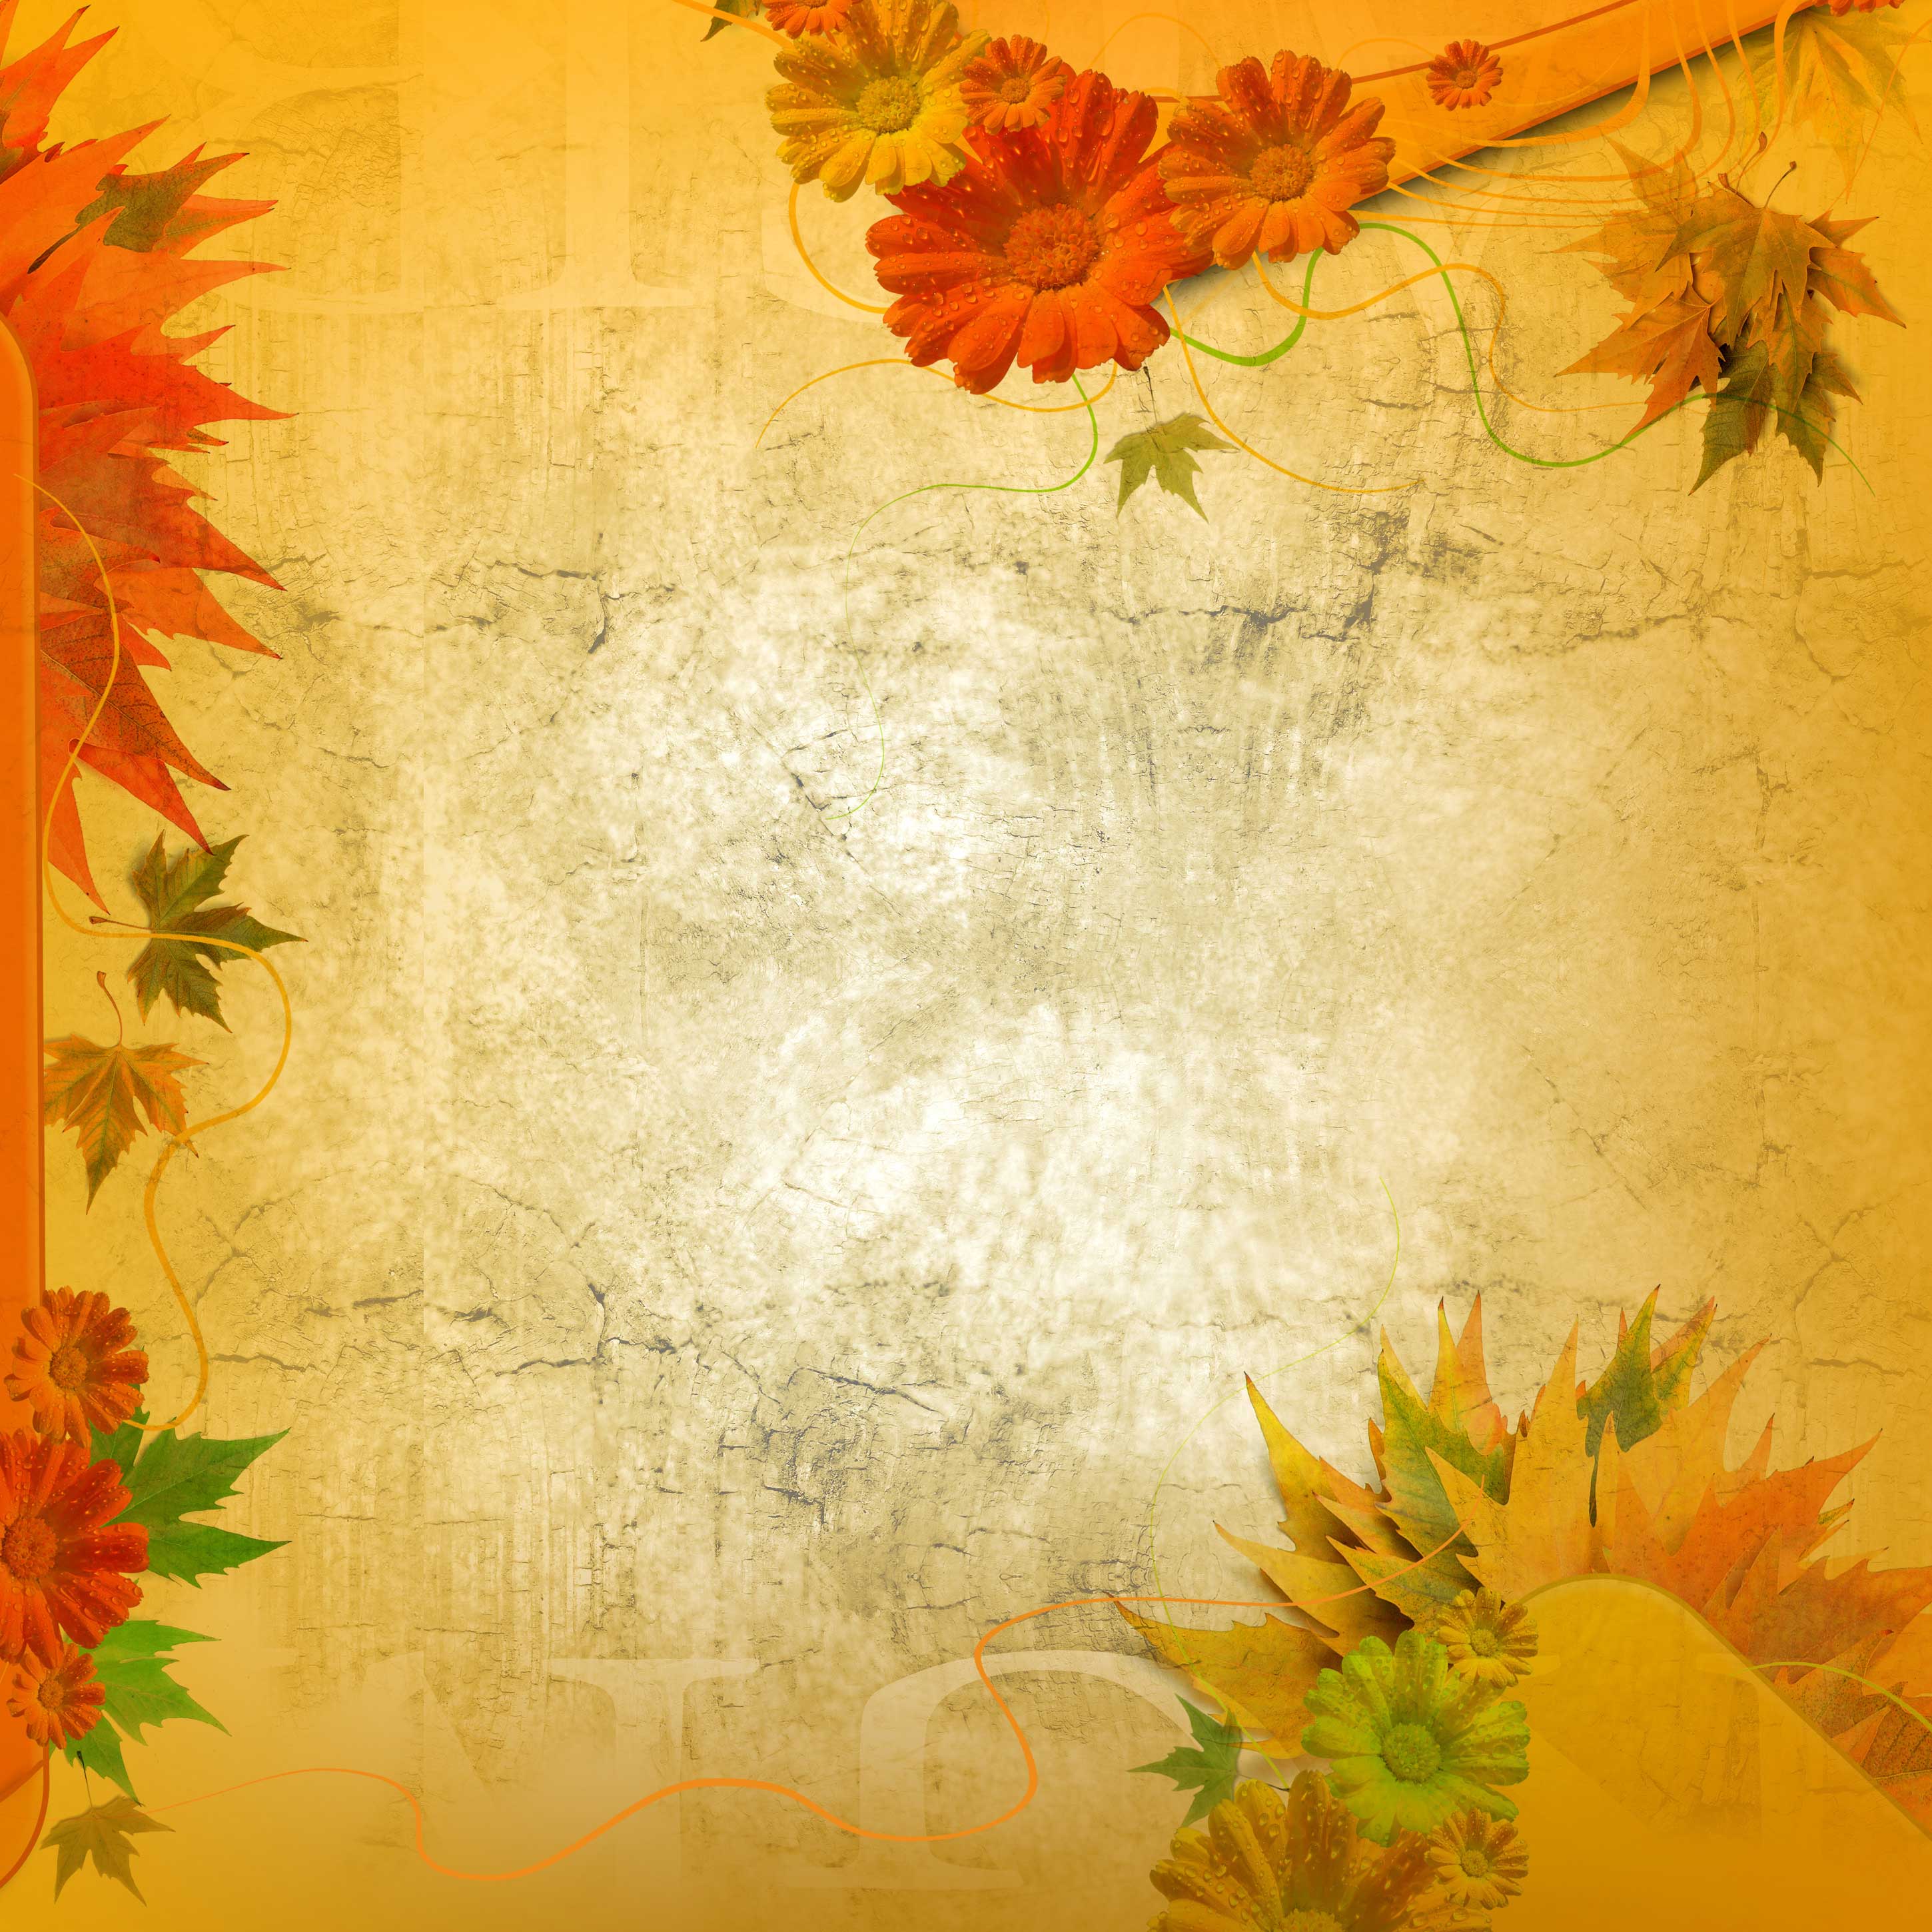 花のイラスト フリー素材 壁紙 背景no 228 シック レトロ調 秋の色